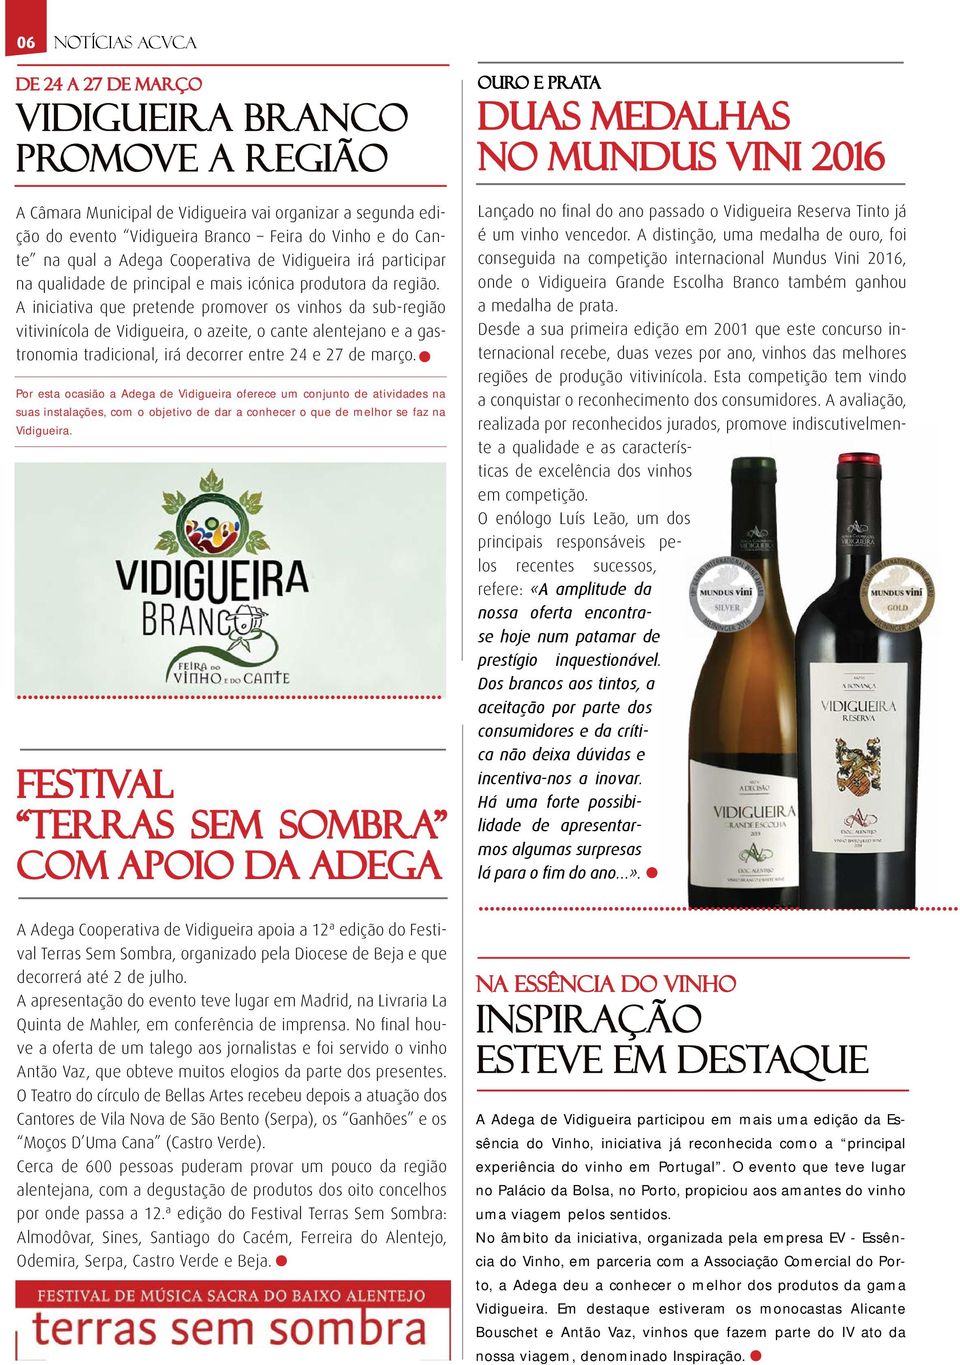 A iniciativa que pretende promover os vinhos da sub-região vitivinícola de Vidigueira, o azeite, o cante alentejano e a gastronomia tradicional, irá decorrer entre 24 e 27 de março.